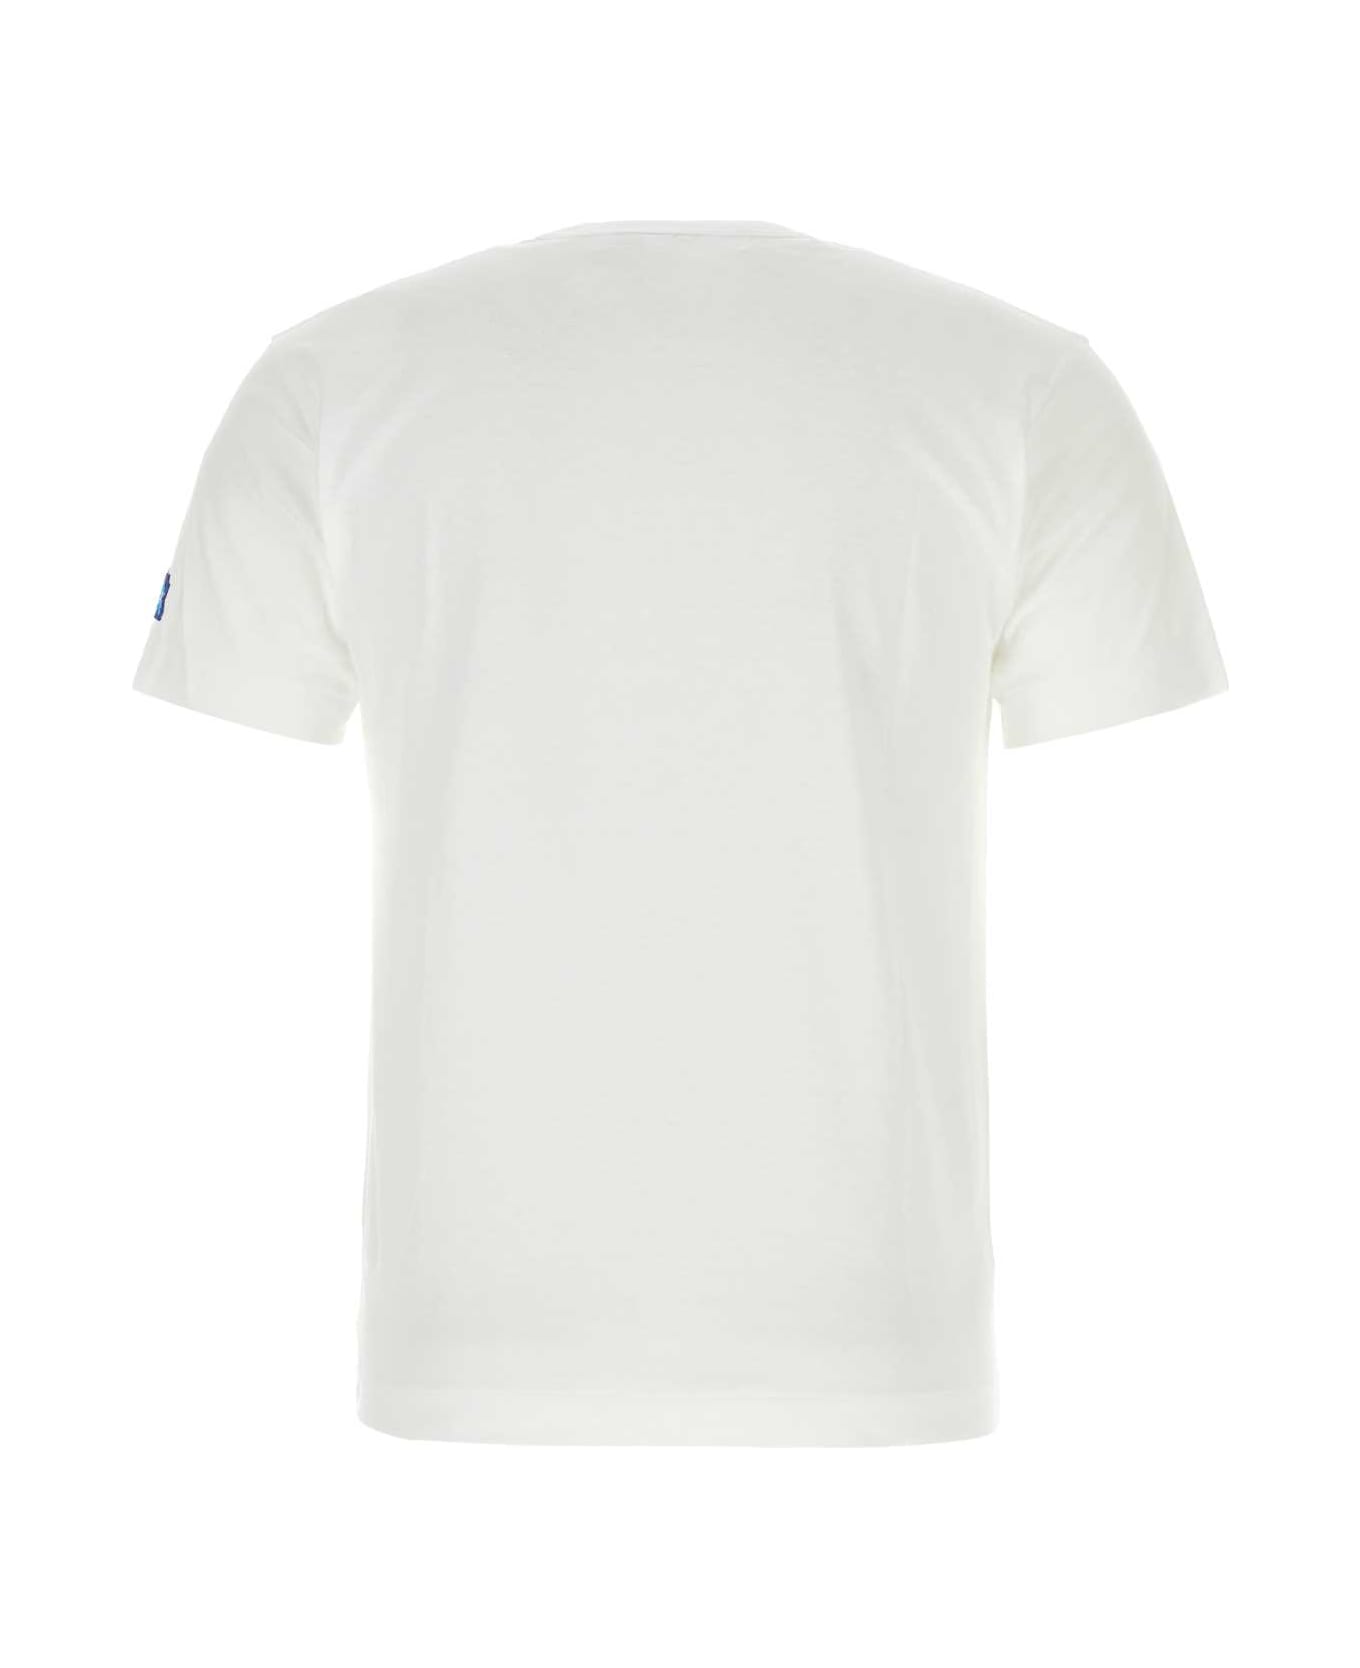 Comme des Garçons Play White Cotton T-shirt - WHT